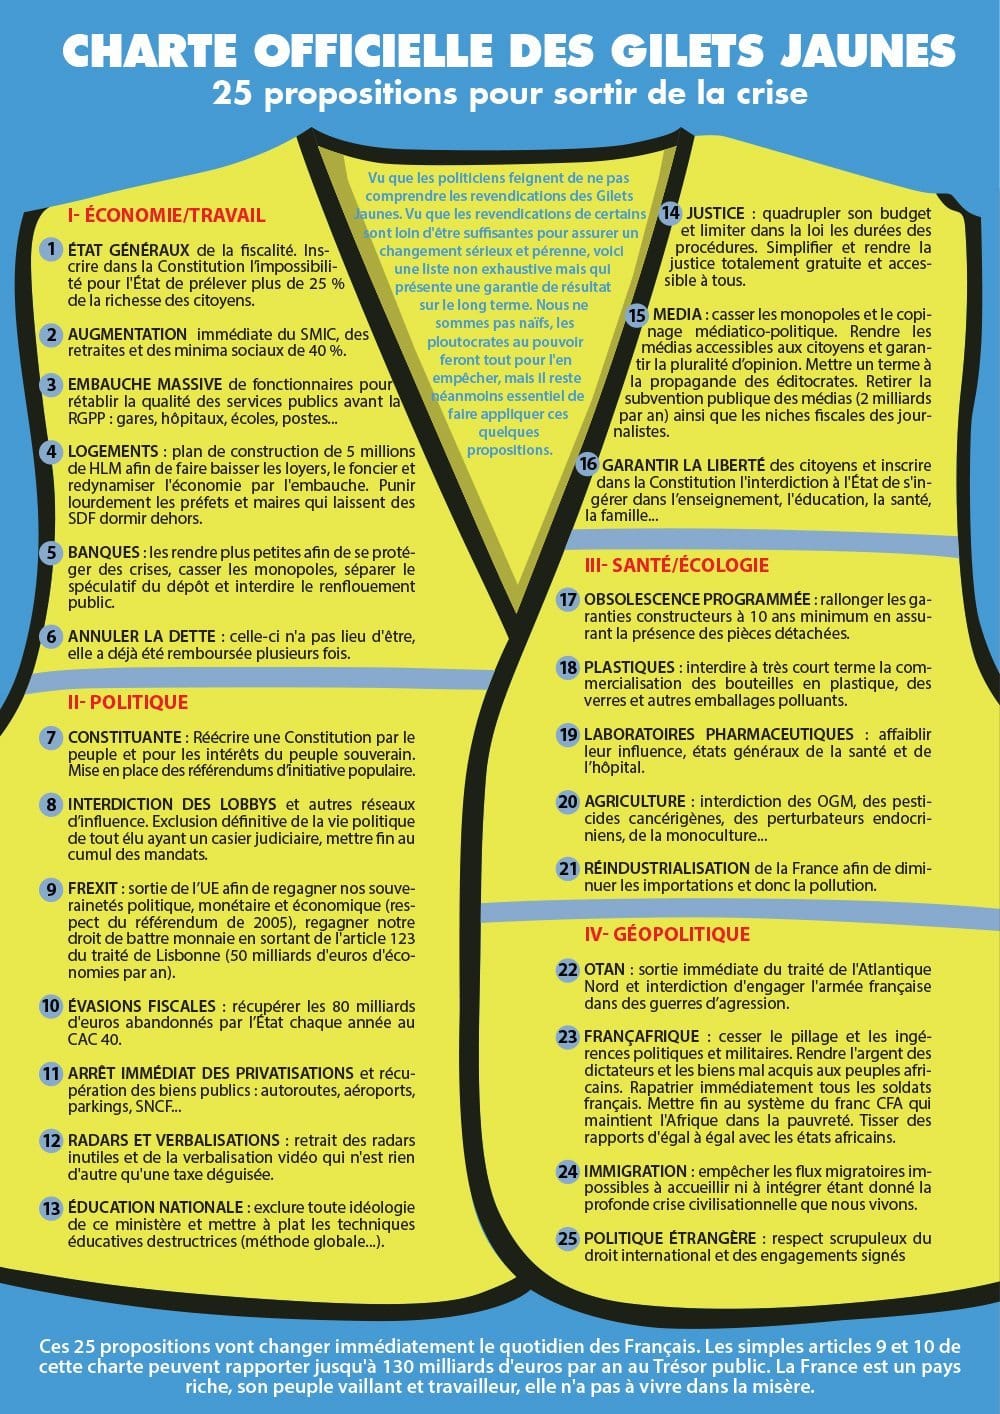 La charte officielle des Gilets jaunes compte 25 propositions de sortie de crise